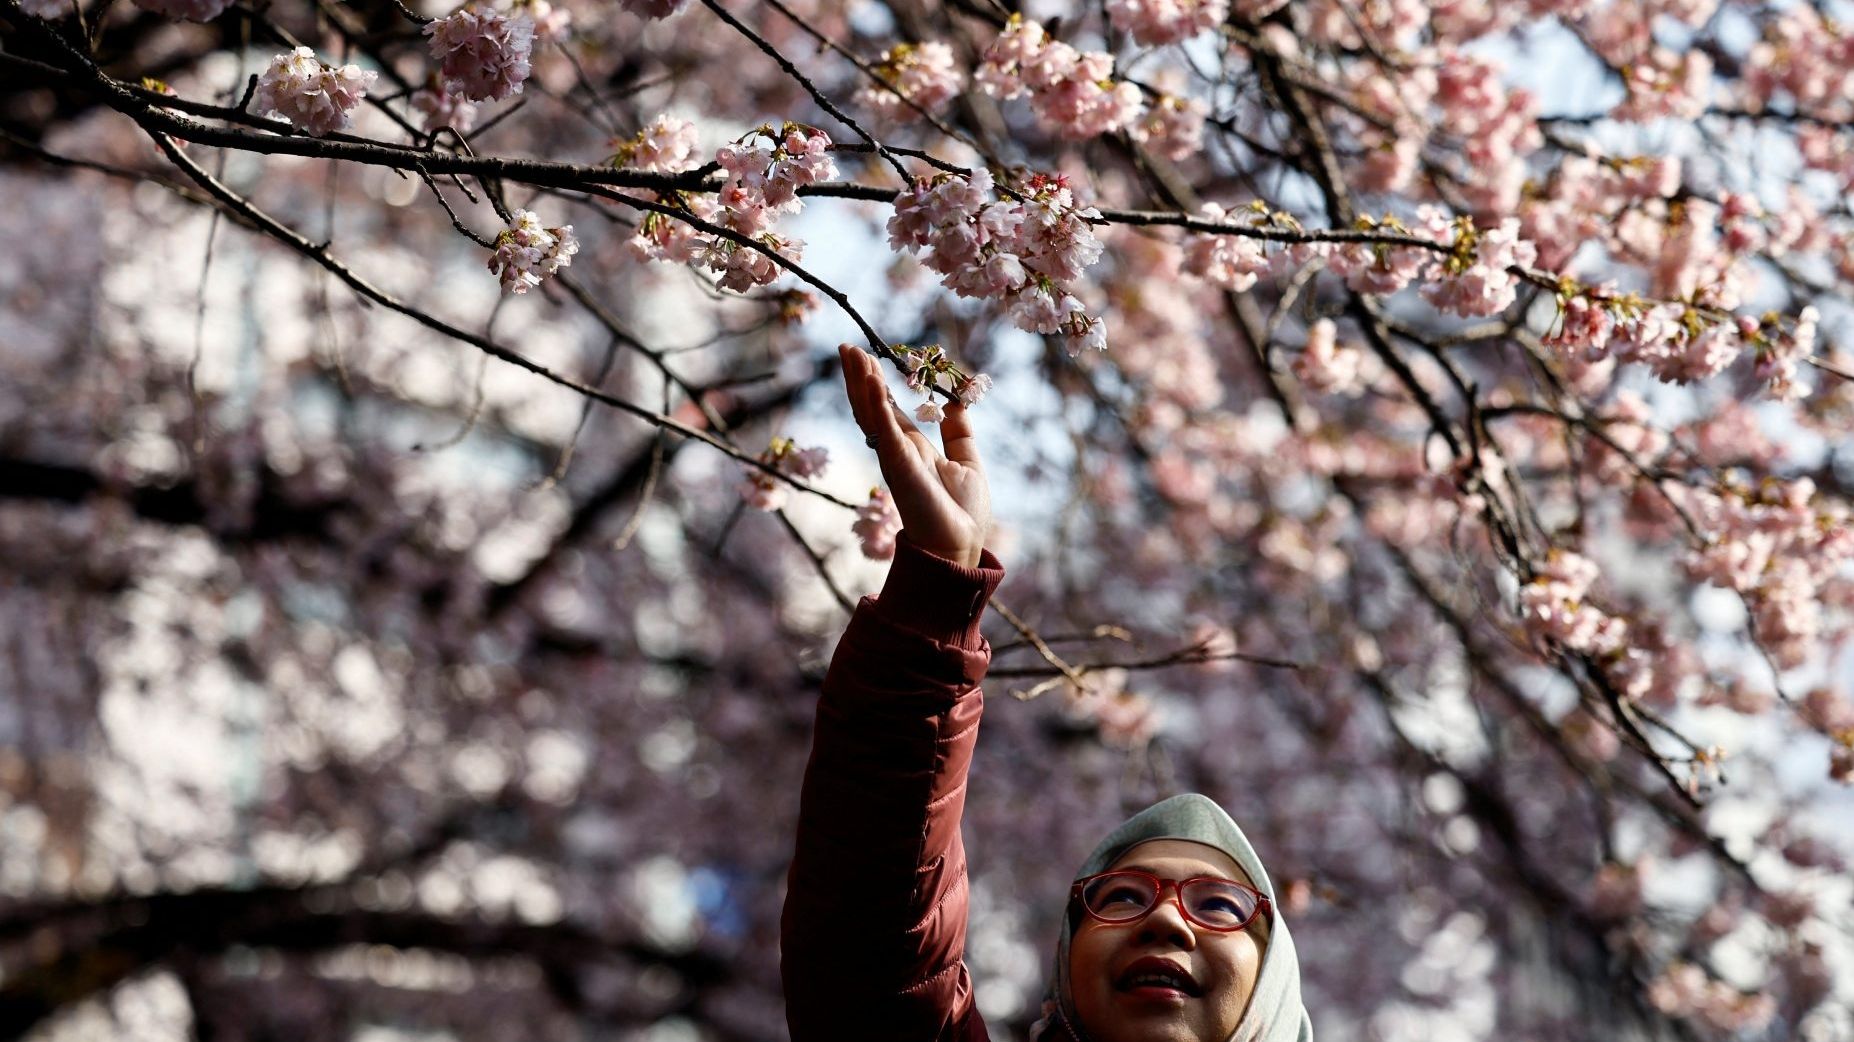 No Solo Pasa en México con las Jacarandas, en Japón los Cerezos También Adelantan su Floración